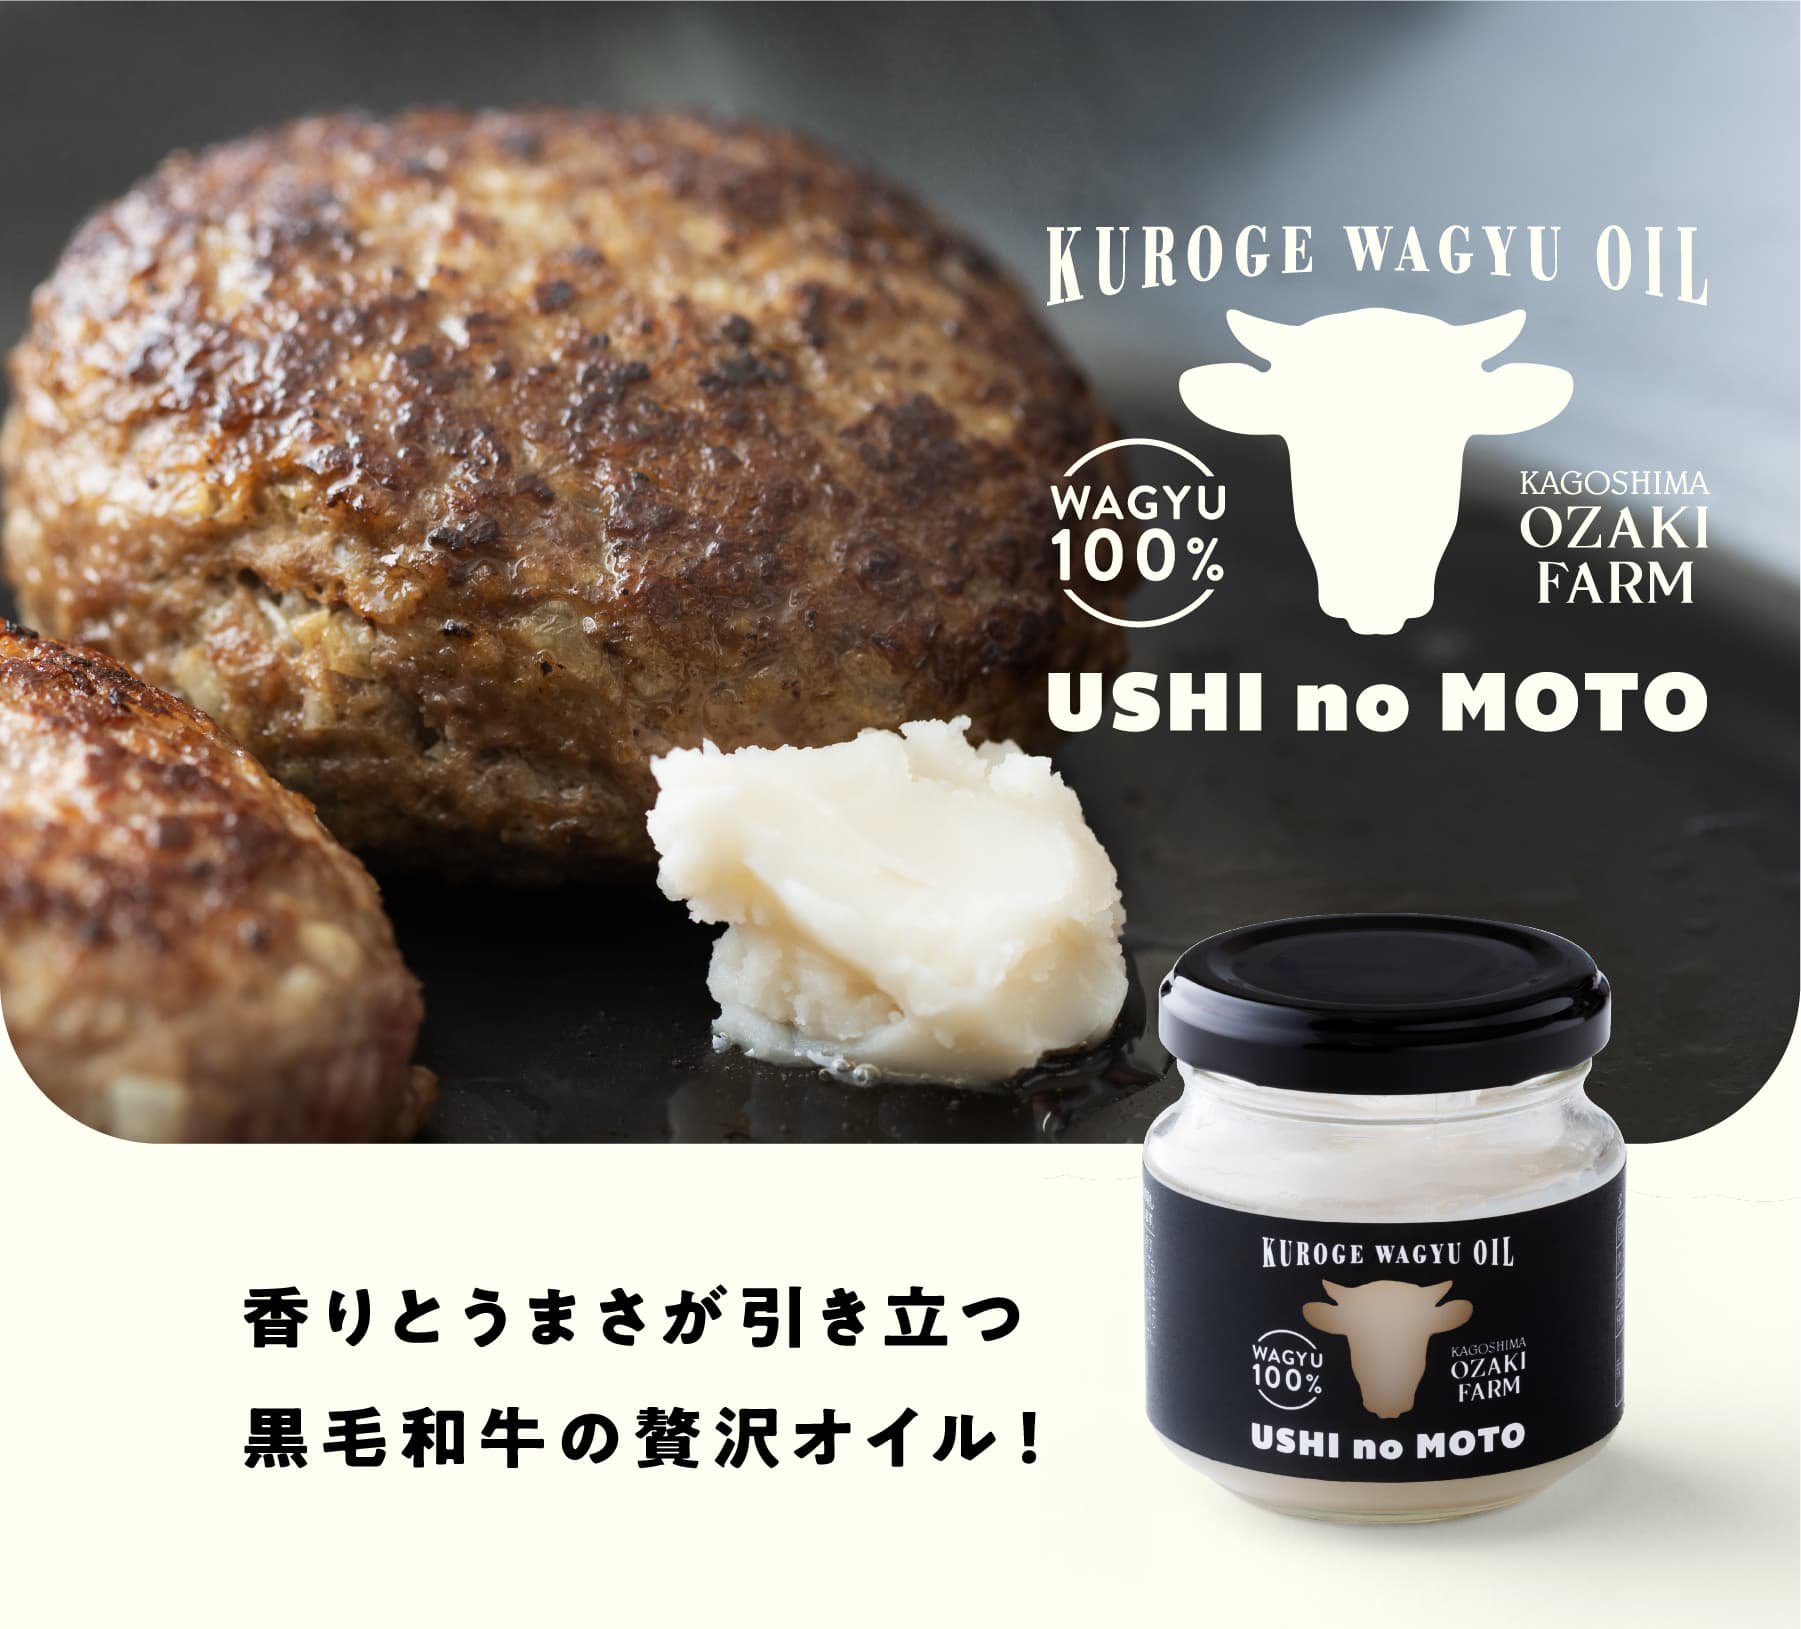 黒毛和牛100% 万能調味料 USHI no MOTO（うしのもと）香りとうまさが引き立つ黒毛和牛の贅沢オイル！